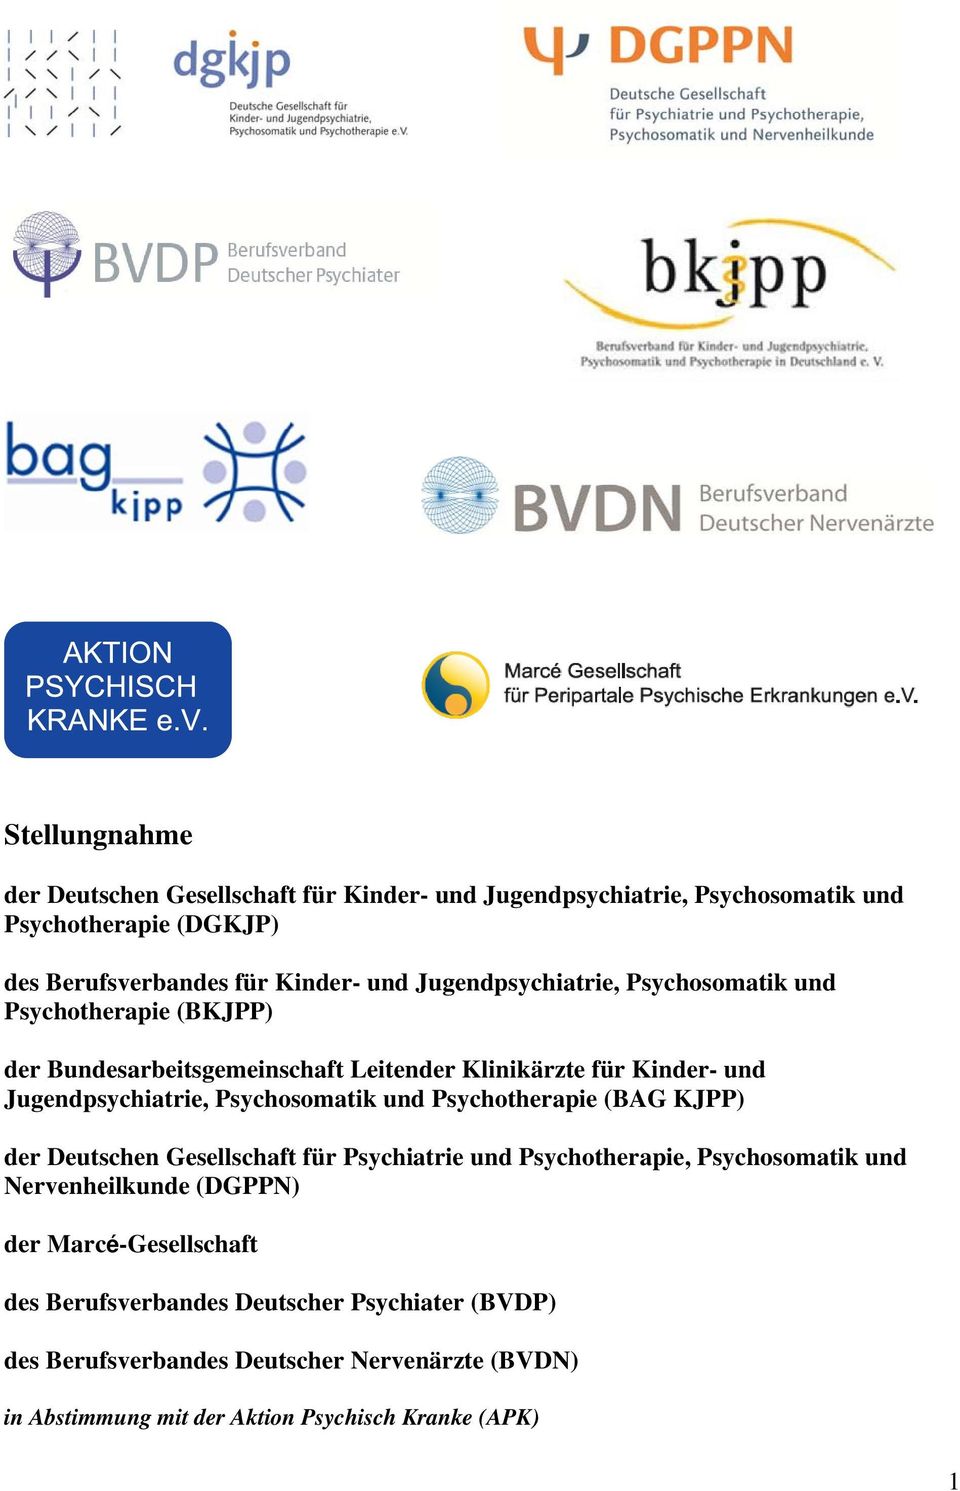 Psychosomatik und Psychotherapie (BAG KJPP) der Deutschen Gesellschaft für Psychiatrie und Psychotherapie, Psychosomatik und Nervenheilkunde (DGPPN) der